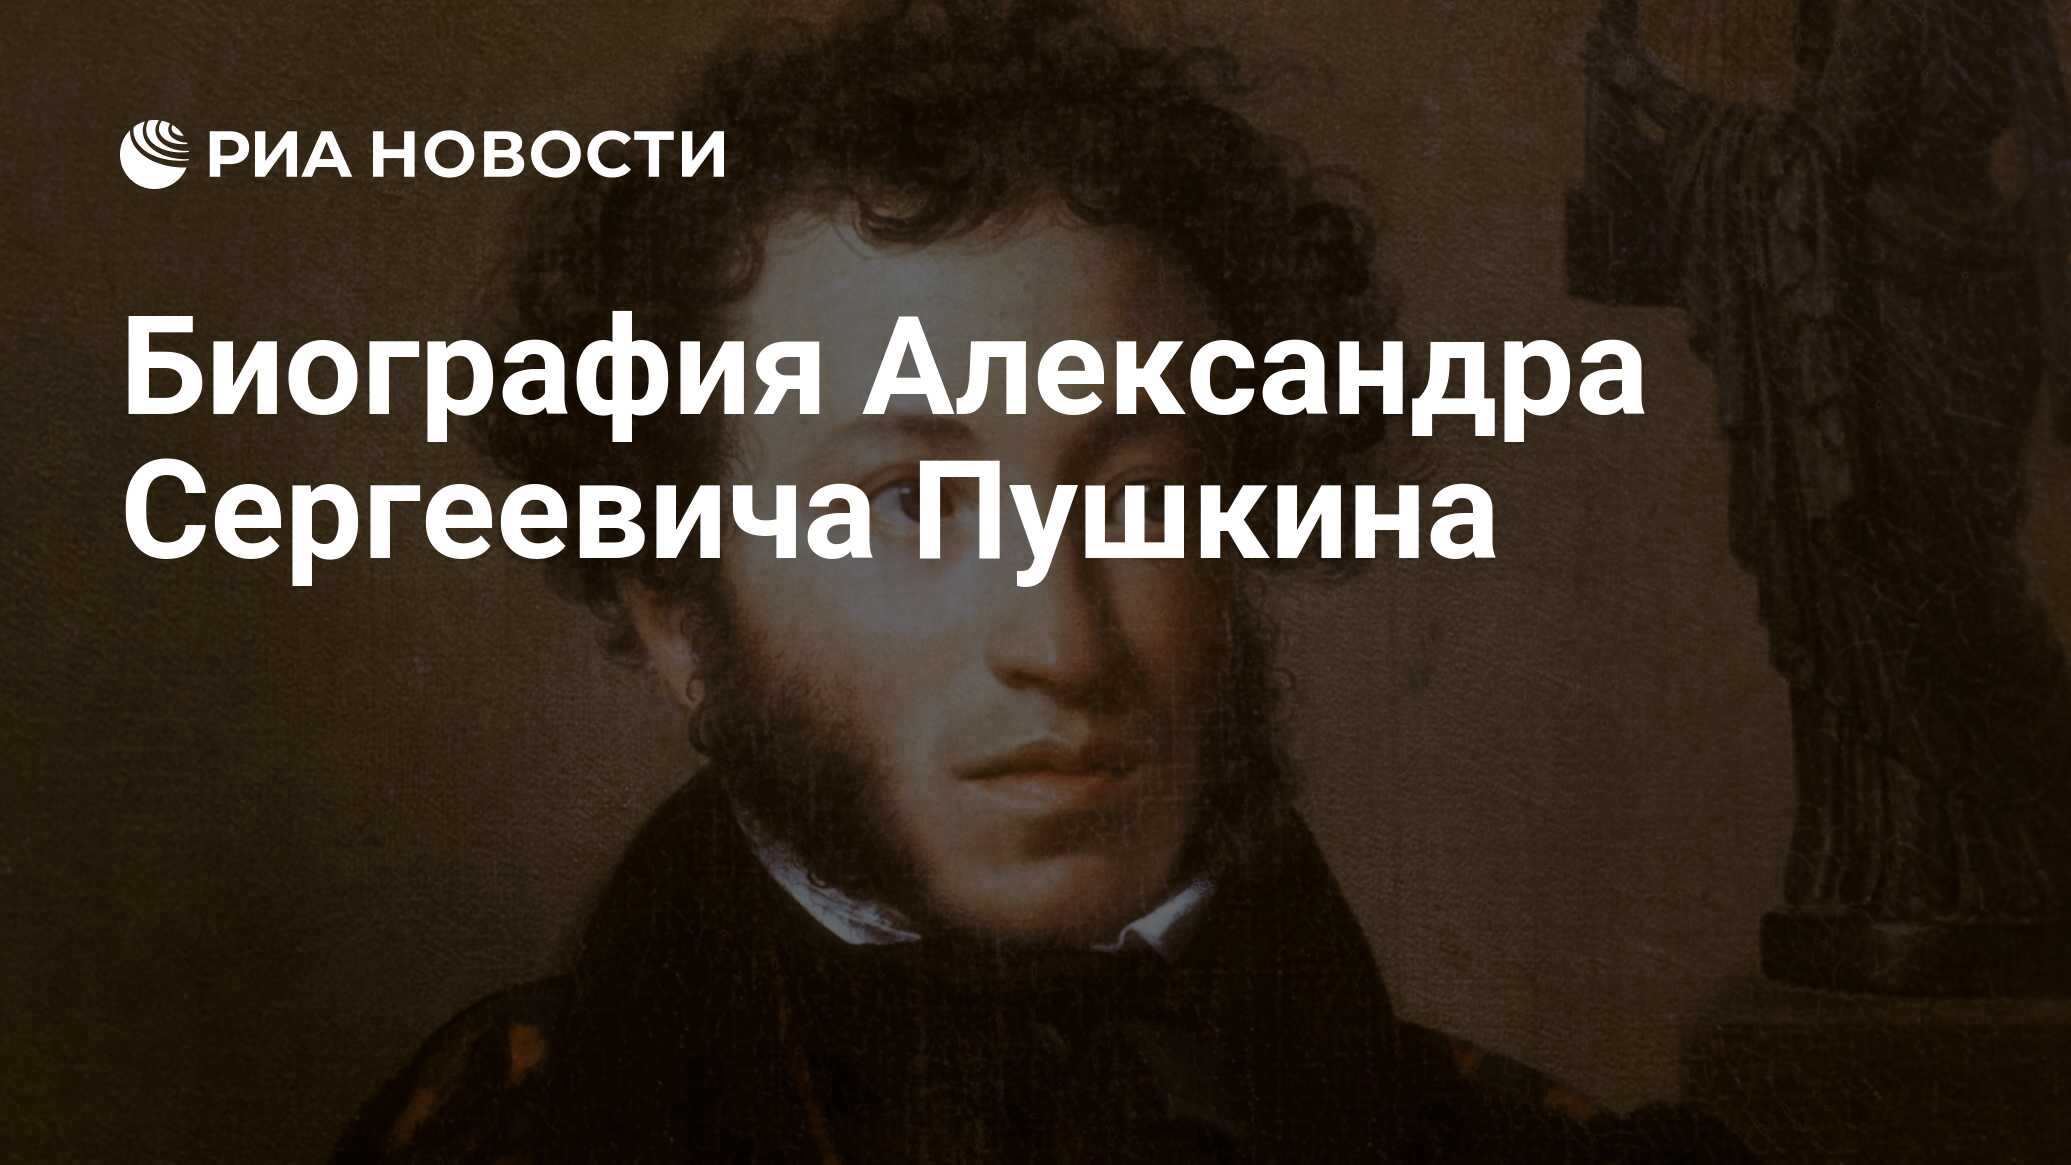 Сколько лет прожил пушкин а с thumbnail